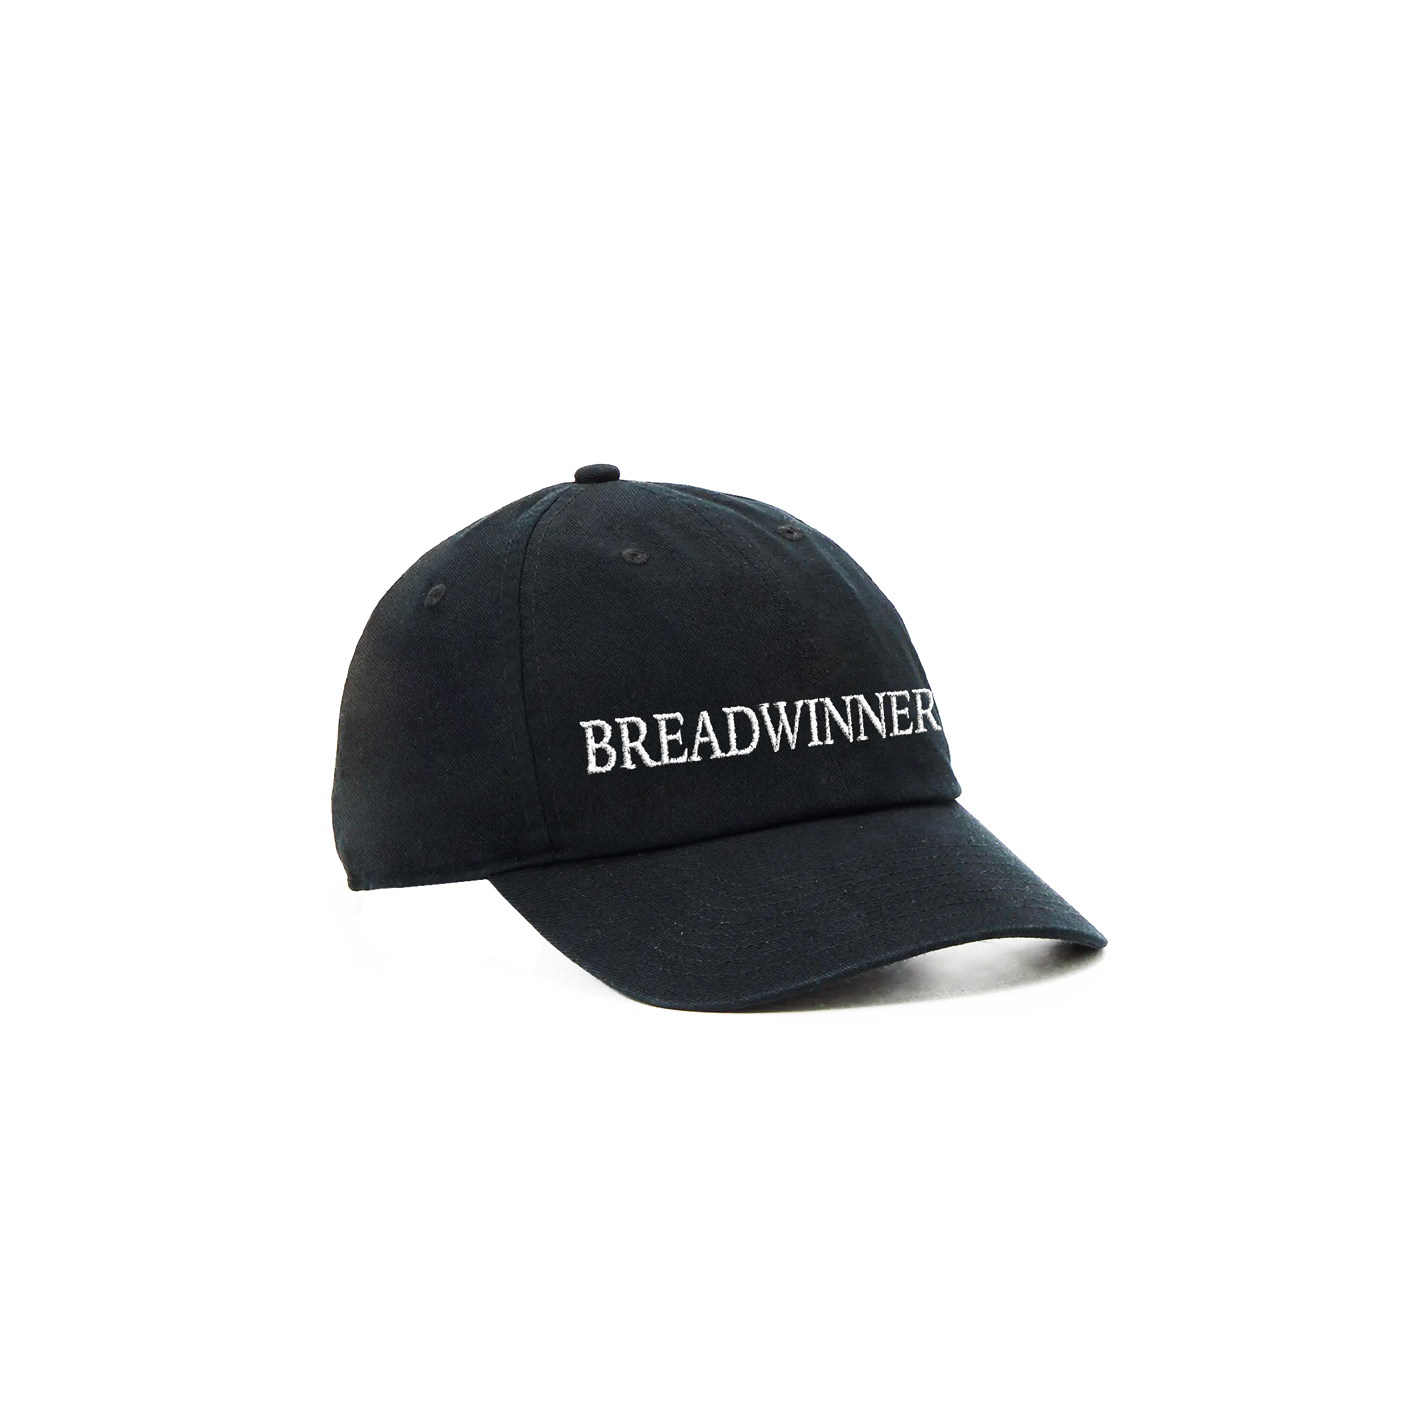 BREADWINNER CAP